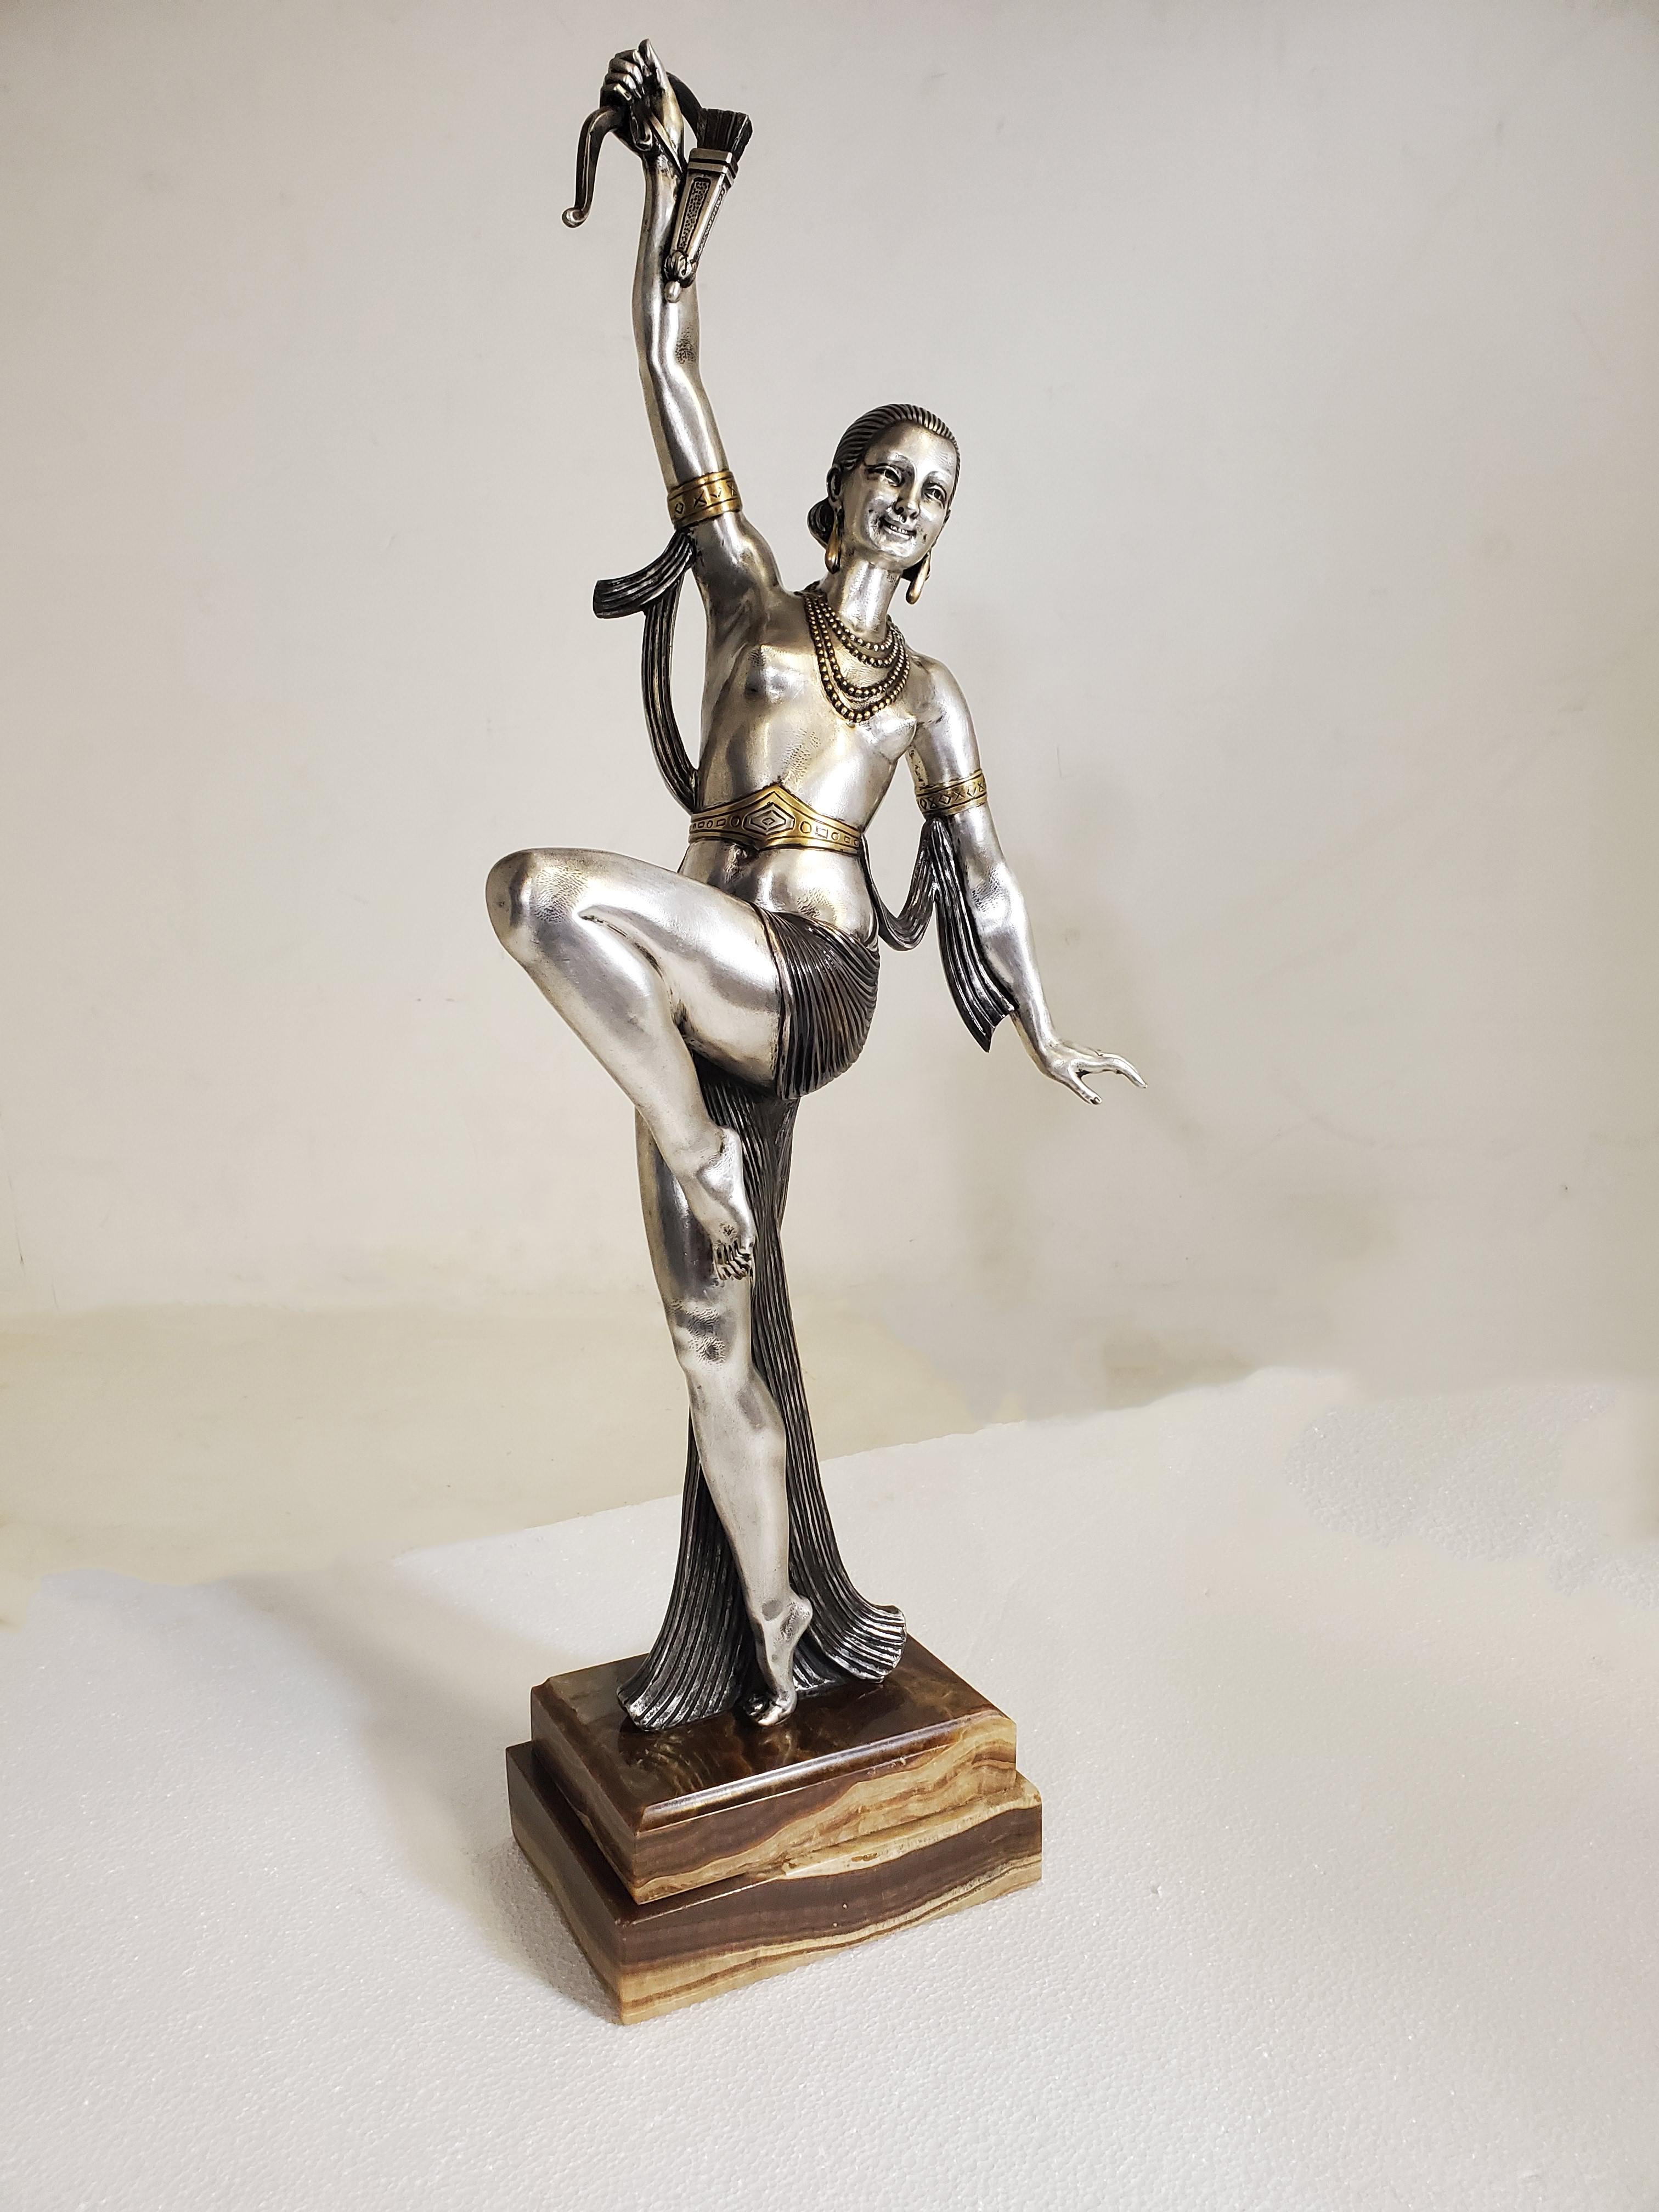 Grande sculpture française originale Art Déco en bronze représentant une danseuse semi-nue tenant un arc et une flèche. 
 Le tissu rayé qui se drape de façon spectaculaire autour du corps de la femme crée un dialogue intéressant et complète la